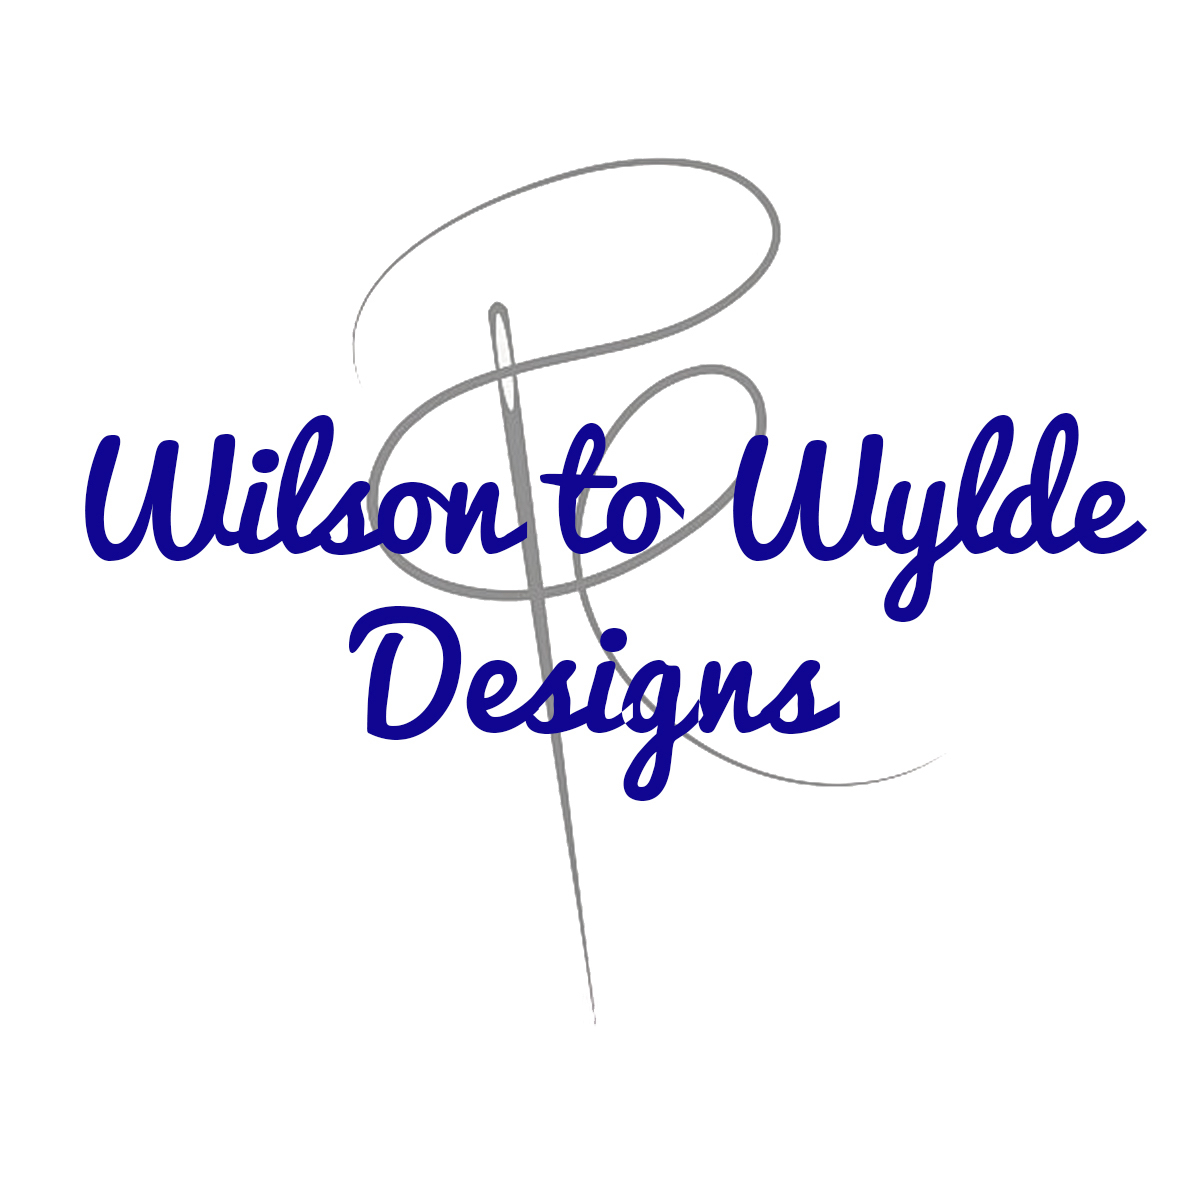 Door Mates, Bohteak, Wilson to Wylde Designs Home Decor